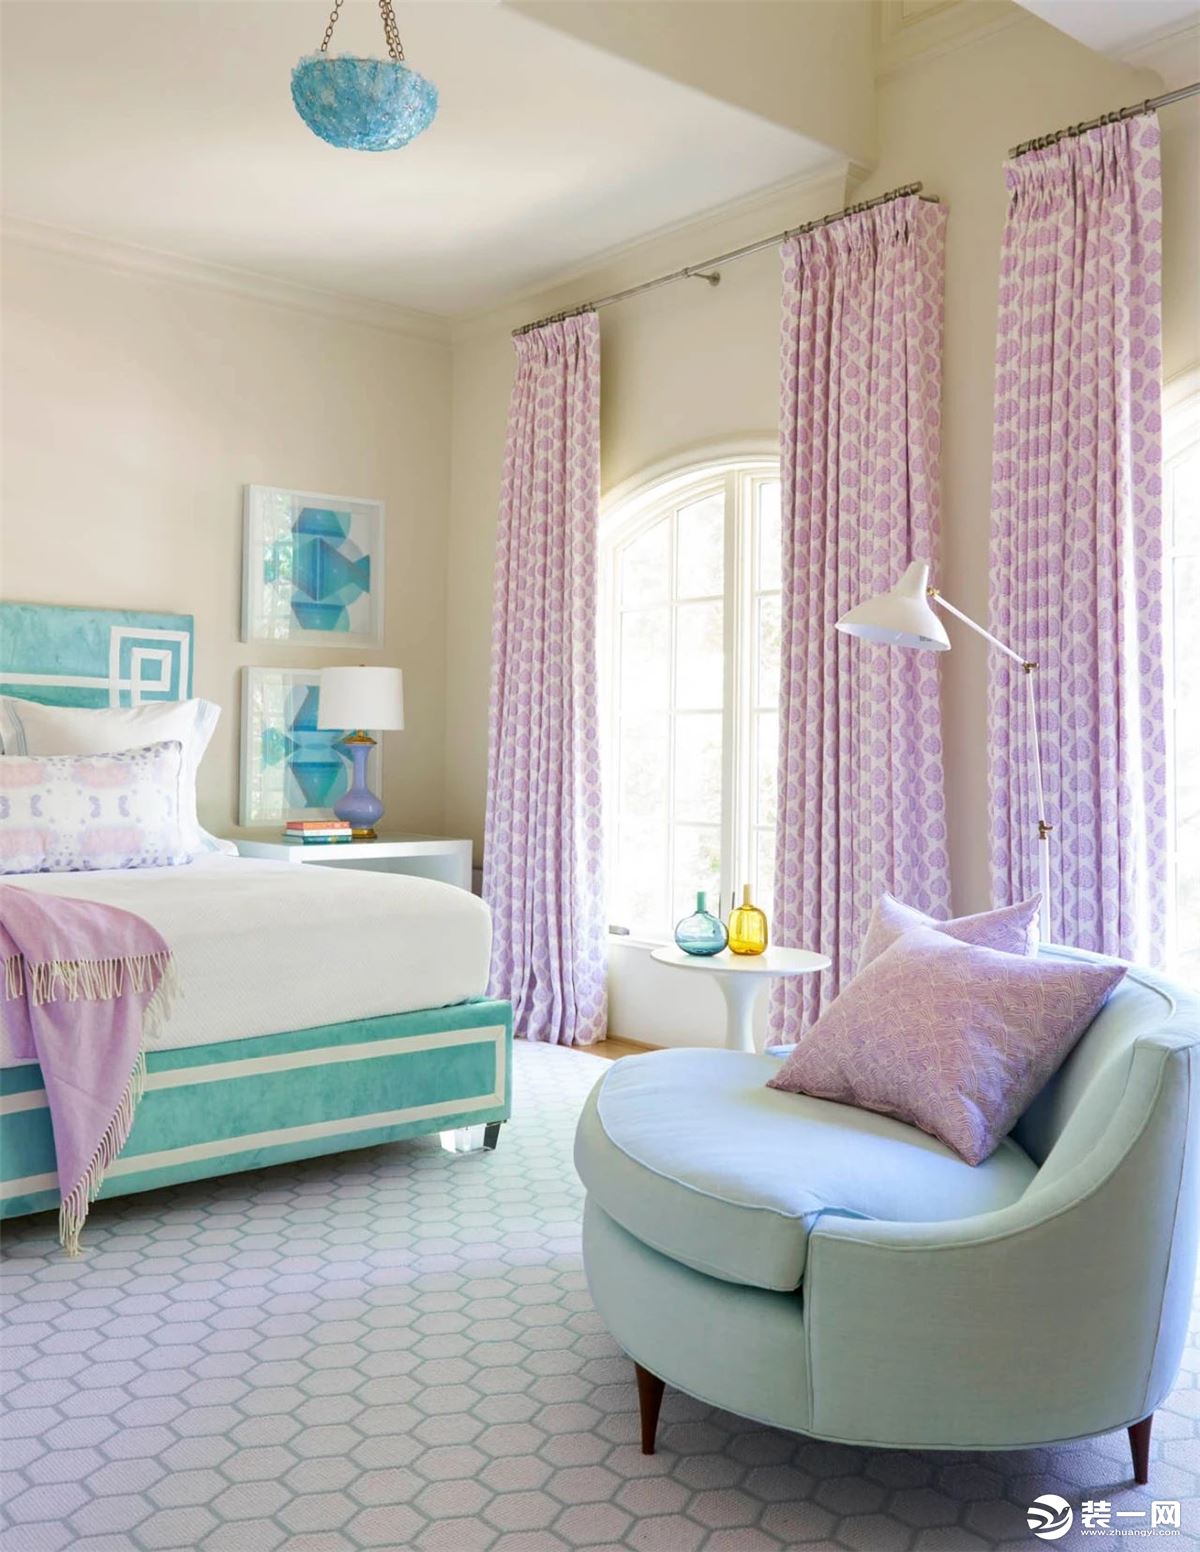 伊莎莱-高端紫色卧室窗帘效果图-卧室窗帘图片